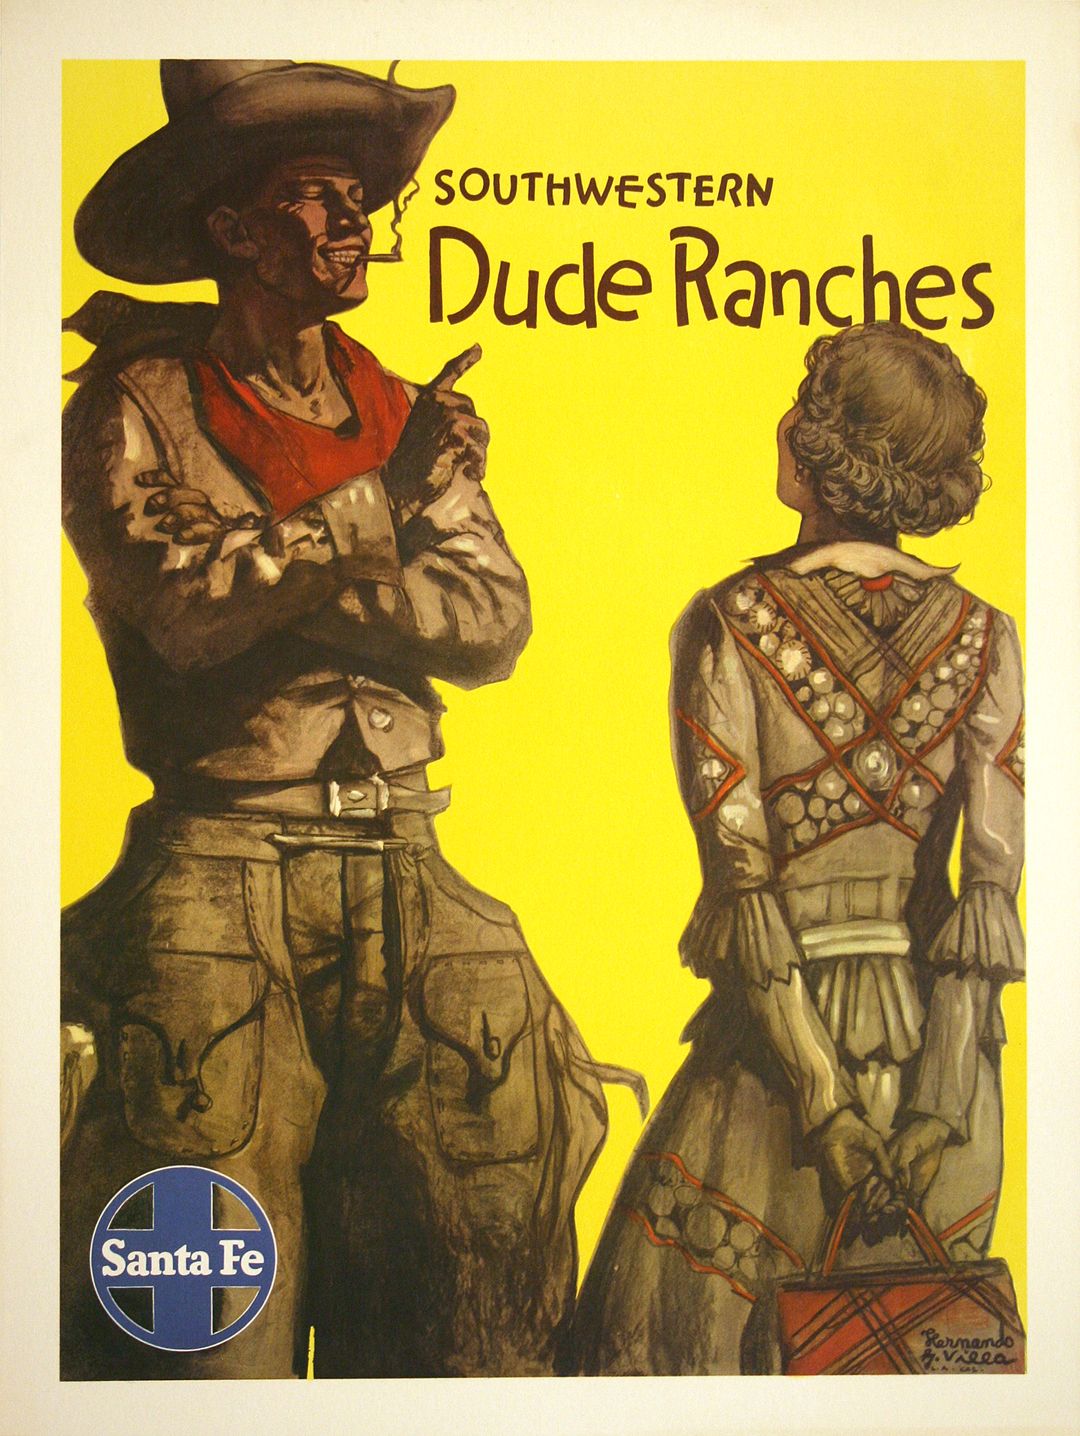 Original Vintage Santa Fe Railway Poster - Dude Ranches by Hernando Villa 1949